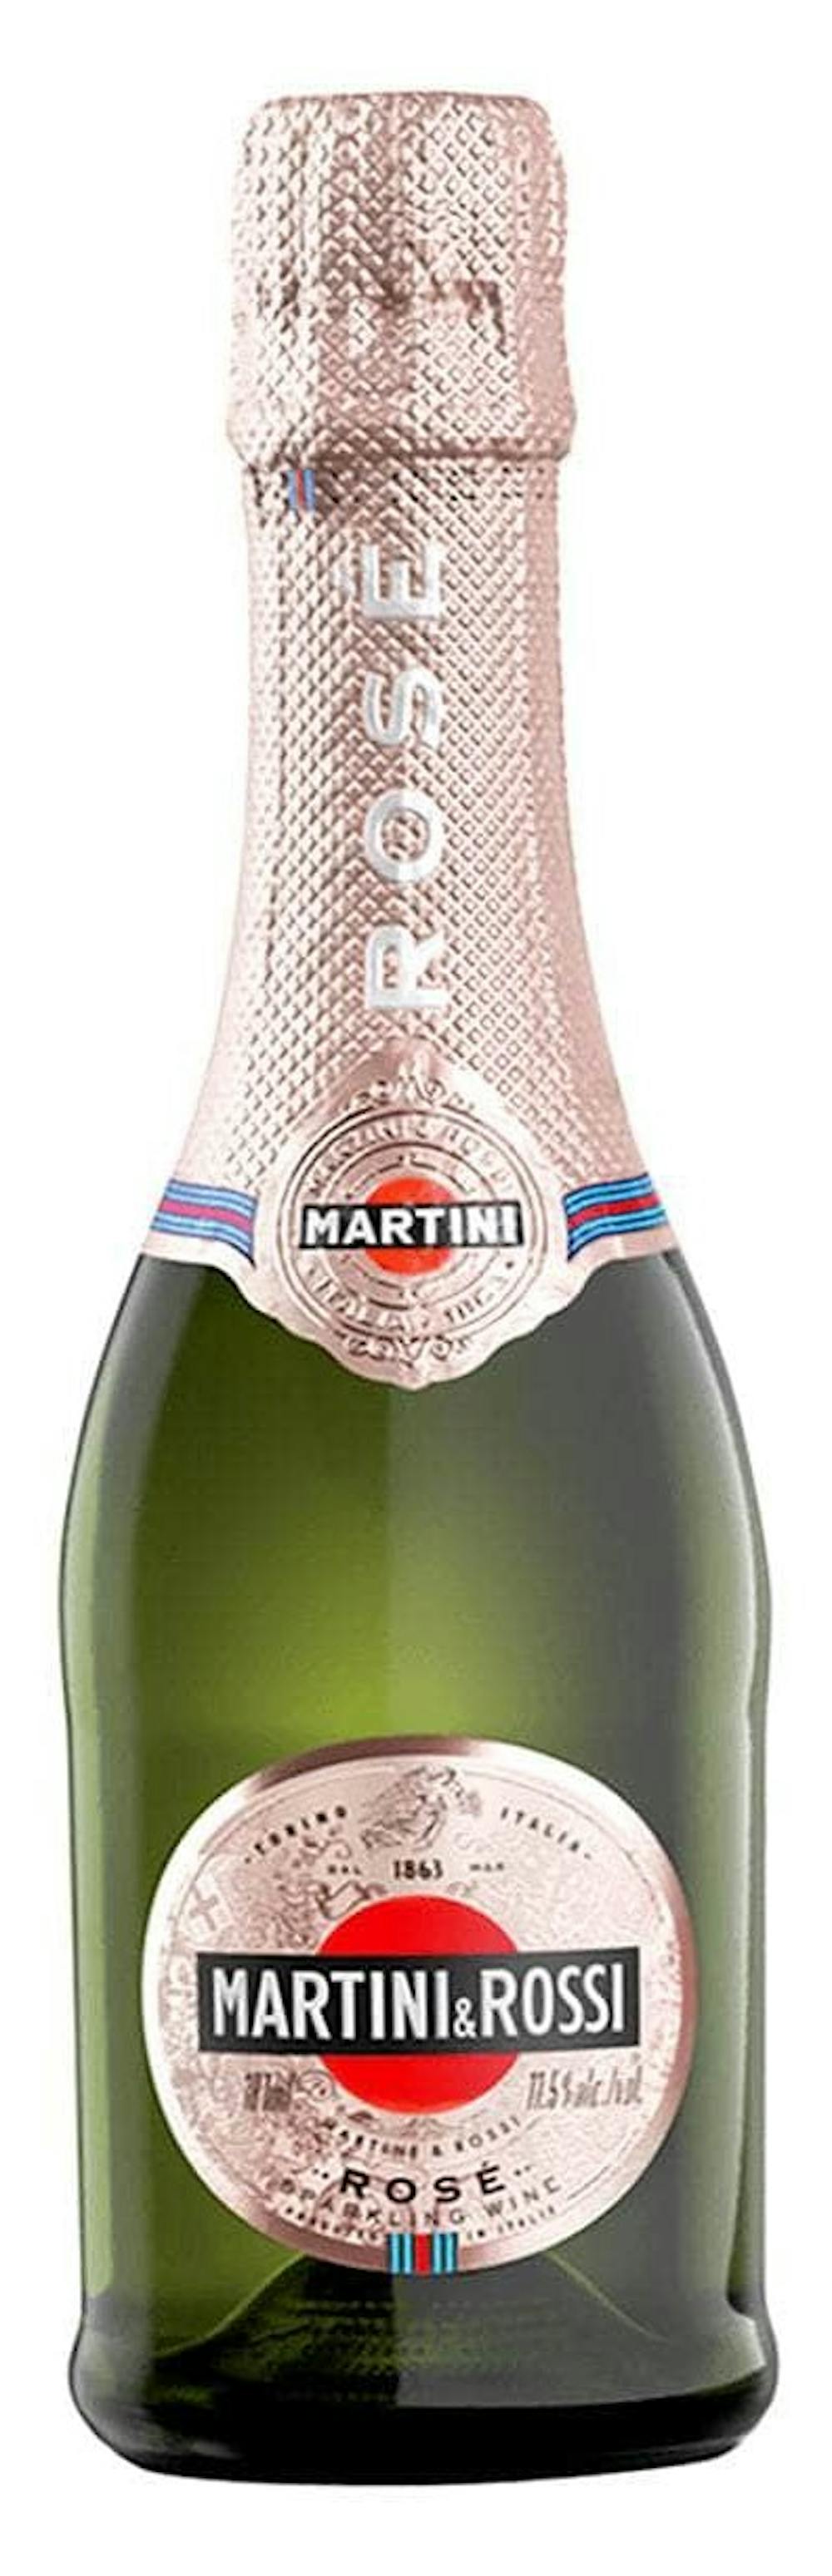 Martini & Rossi 'Sparkling' Rose 187ml